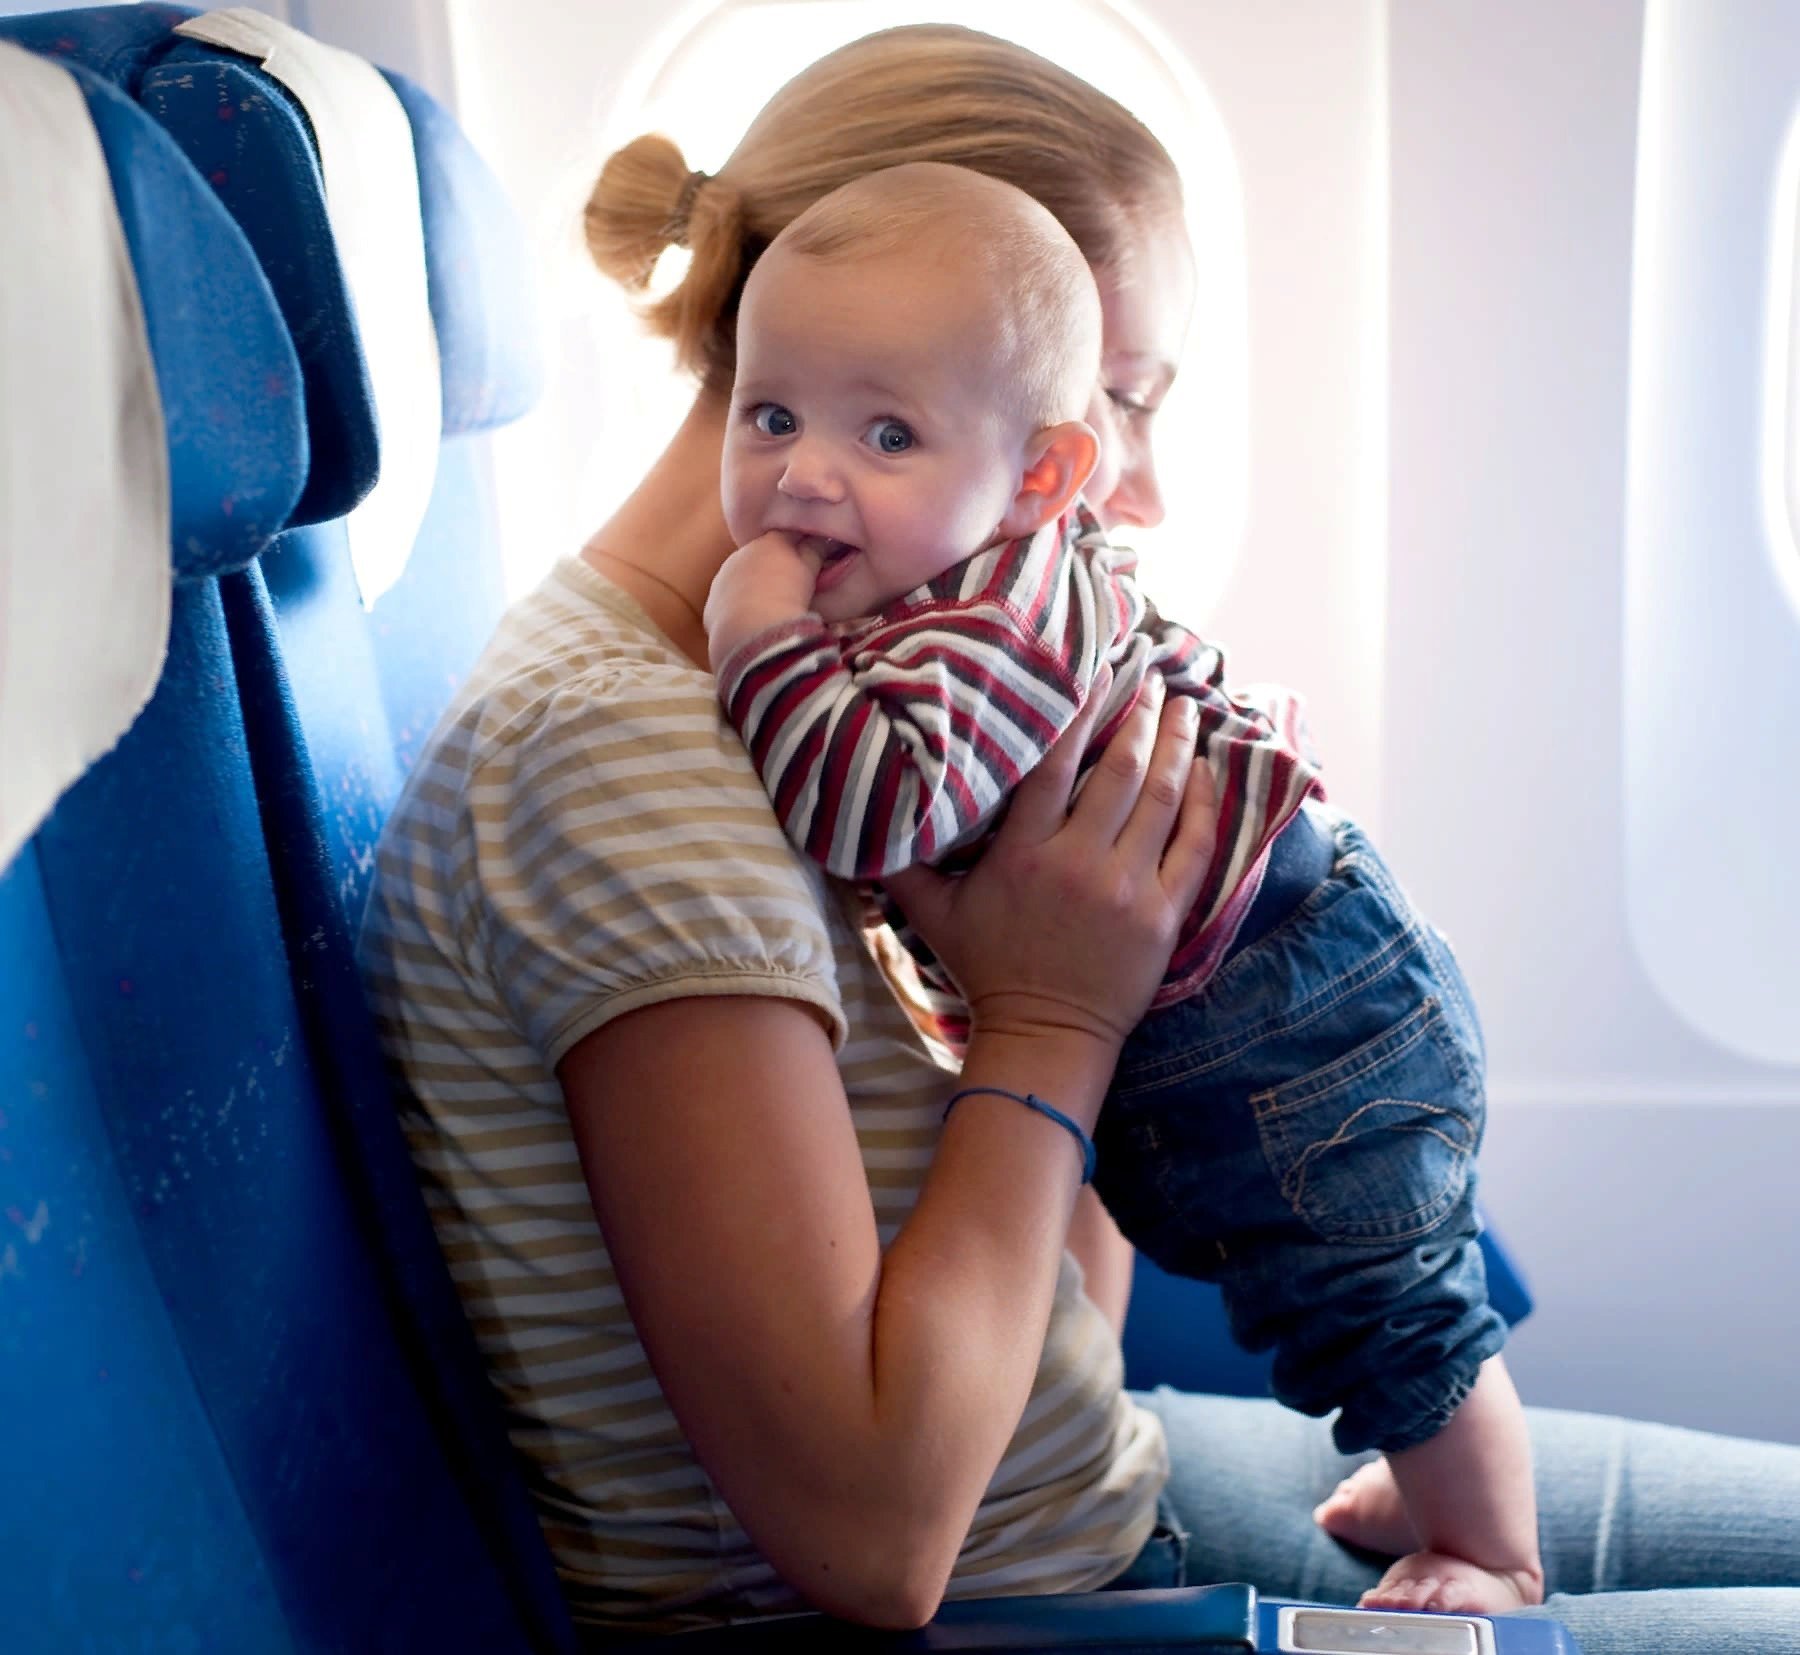 Чем занять ребенка в самолете – 8 отличных идей для перелёта с детьми